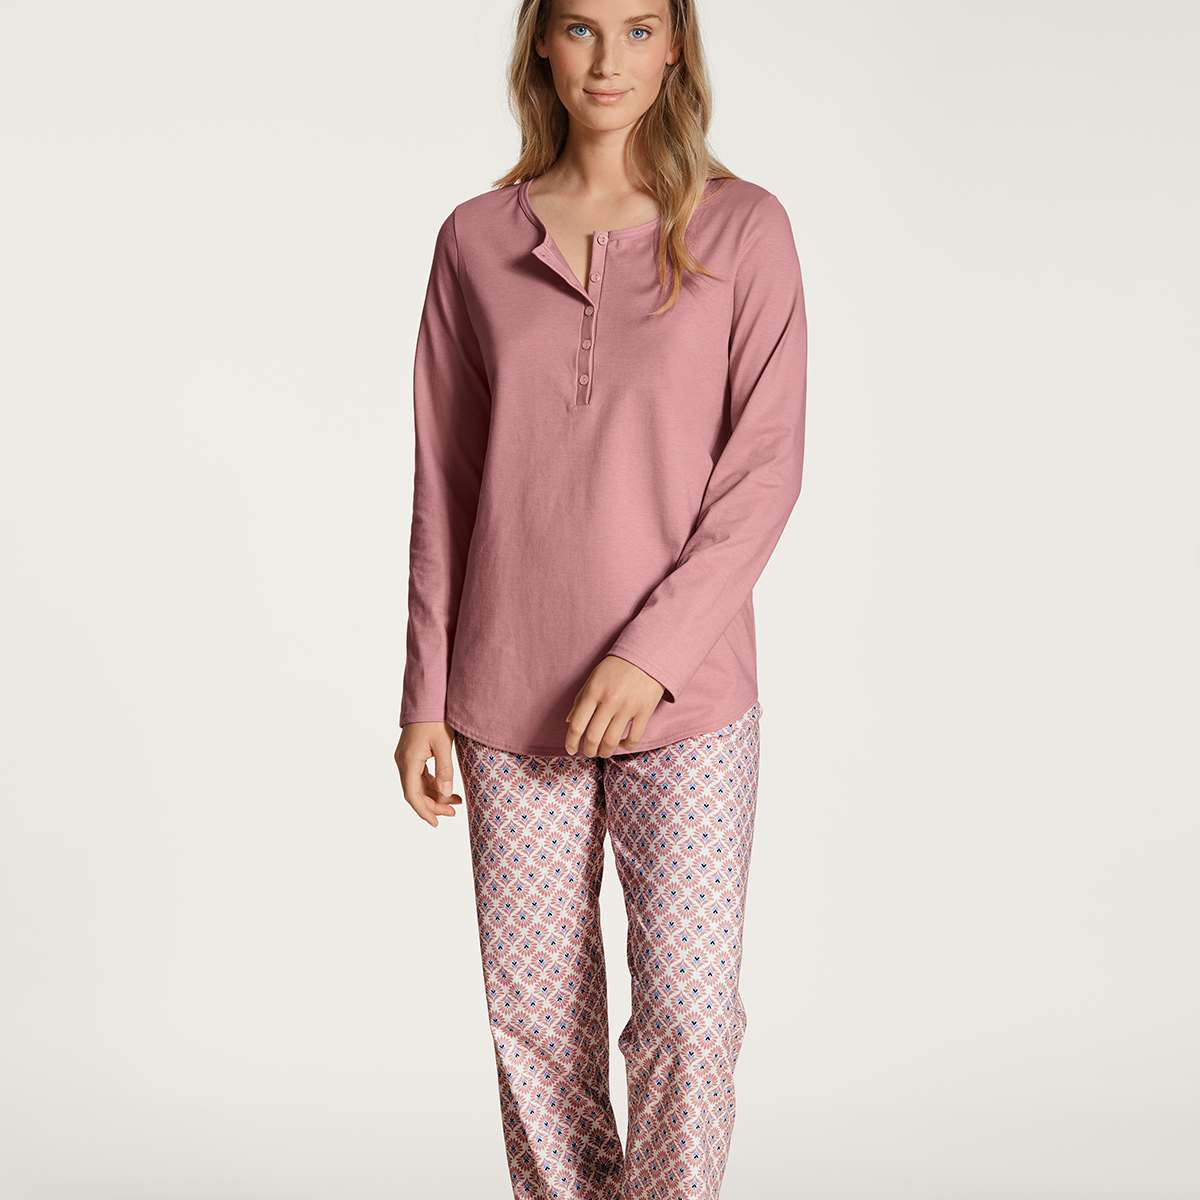 Billede af Calida Pyjamas, Farve: Rose Bud, Størrelse: M, Dame hos Netlingeri.dk